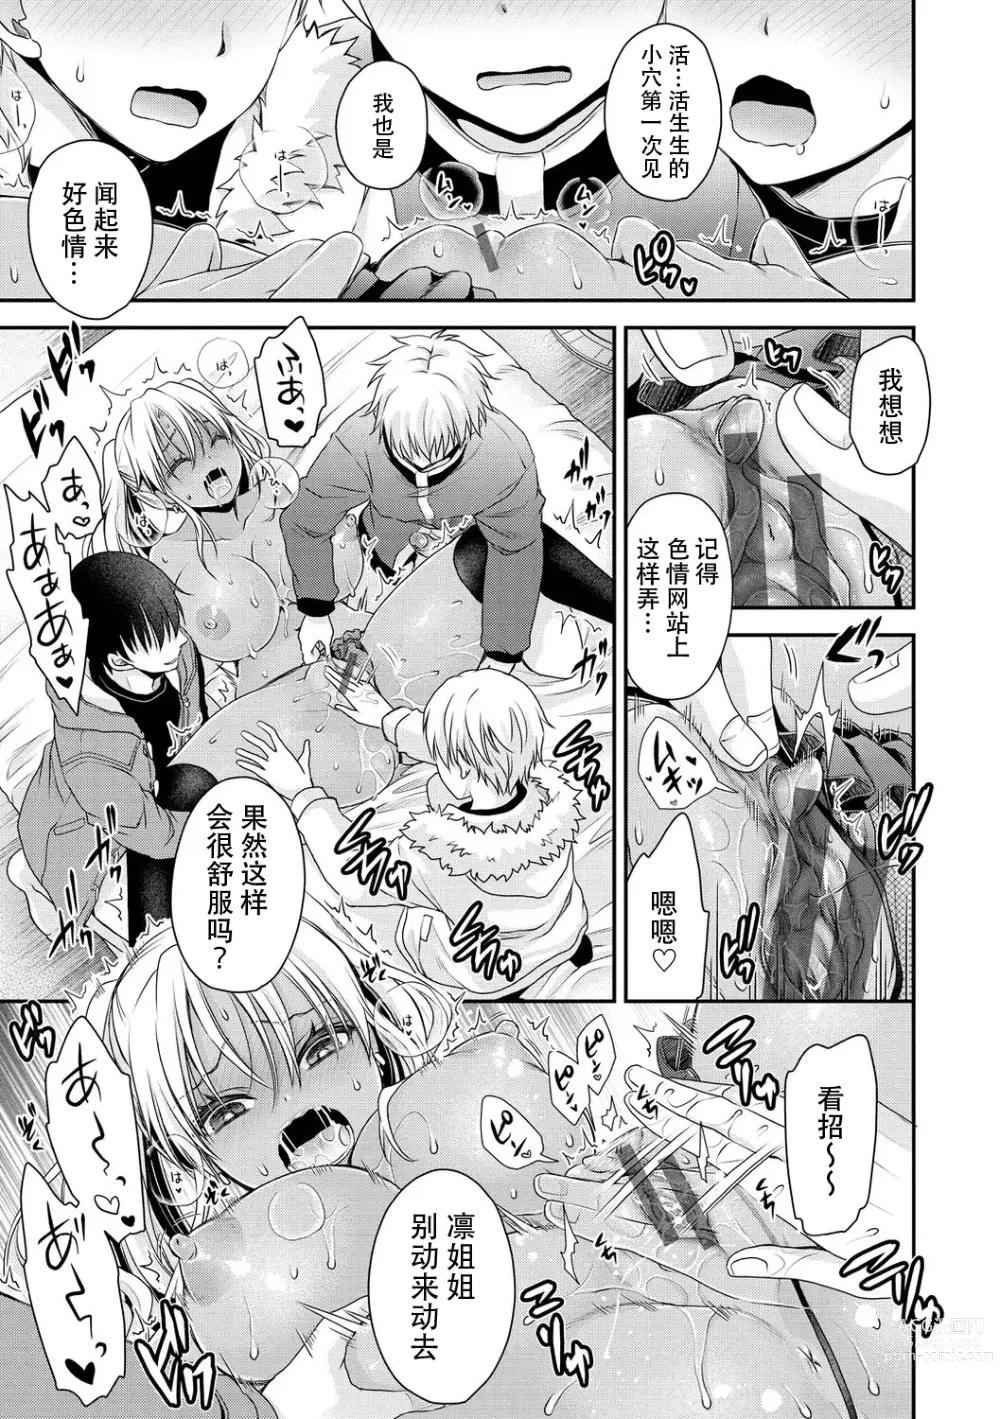 Page 23 of manga Inaka ni Bitch ga Yattekita! + Inaka ni Bitch ga Yattekita! Returns {Watashi No Tondemo Shotaiken)